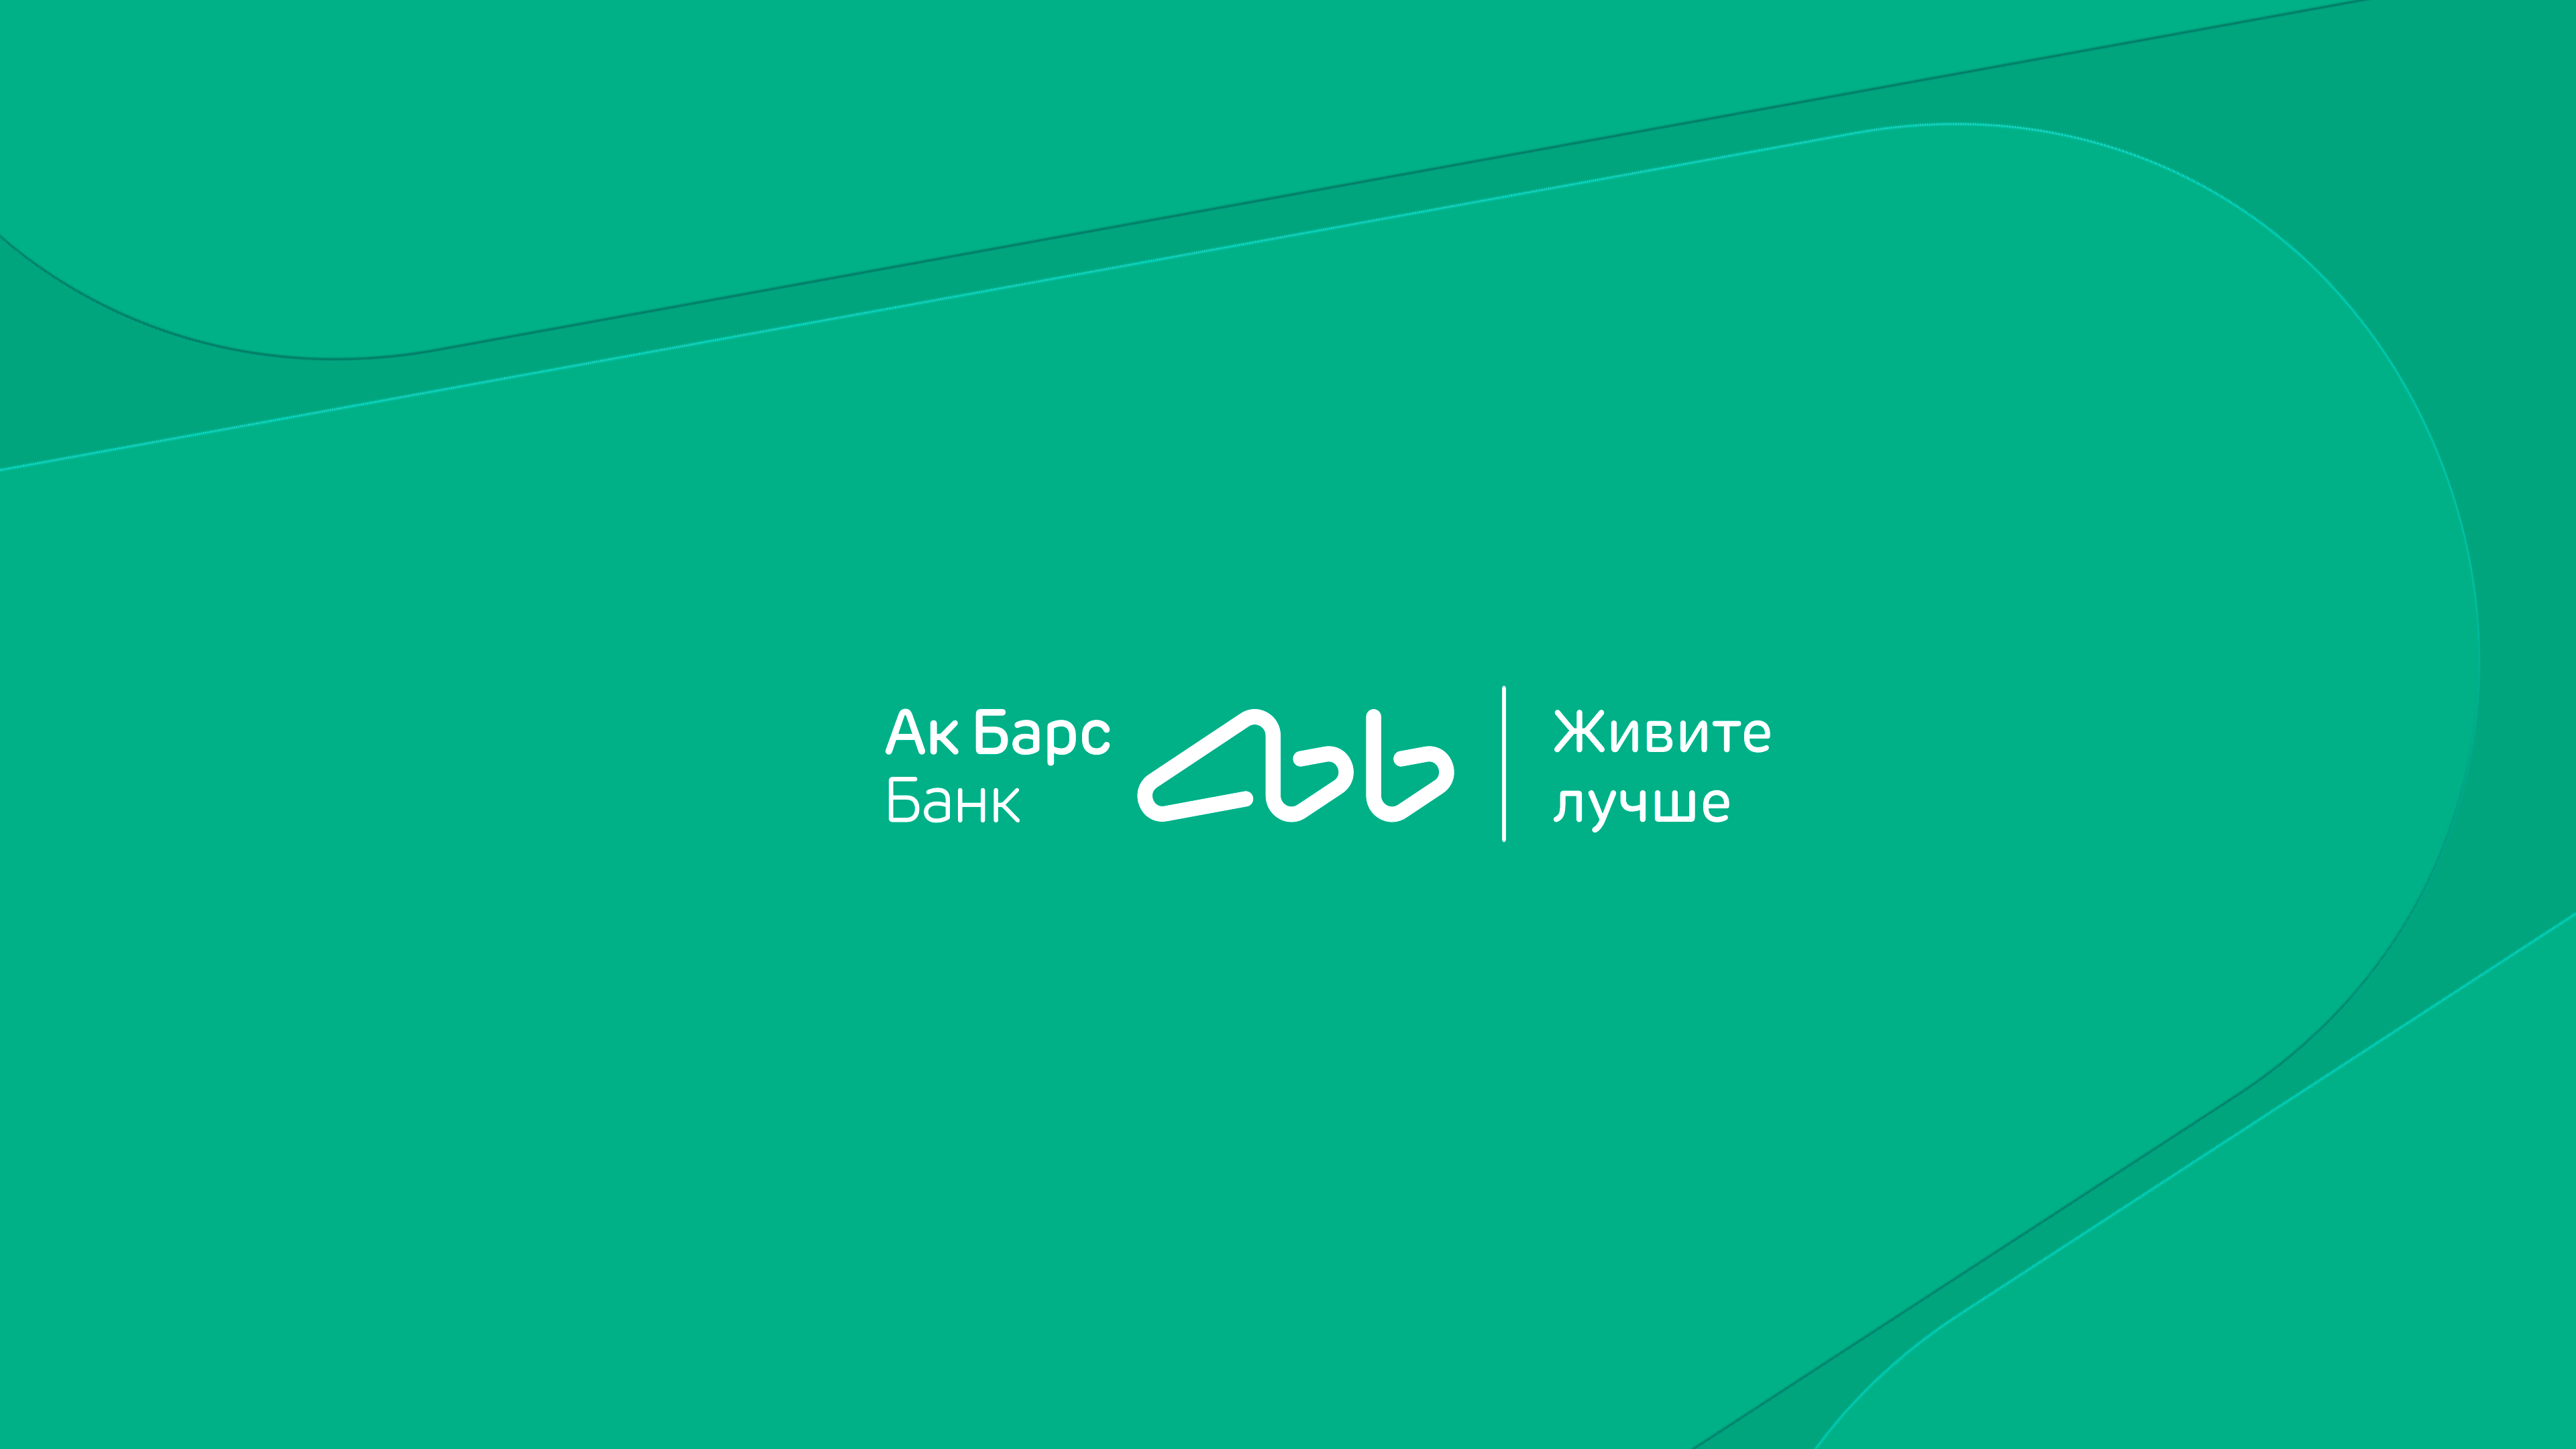 Бренд АК Барс банк. АК Барс банк факторинг. АК Барс банк logo. АК Барс банк малый бизнес.